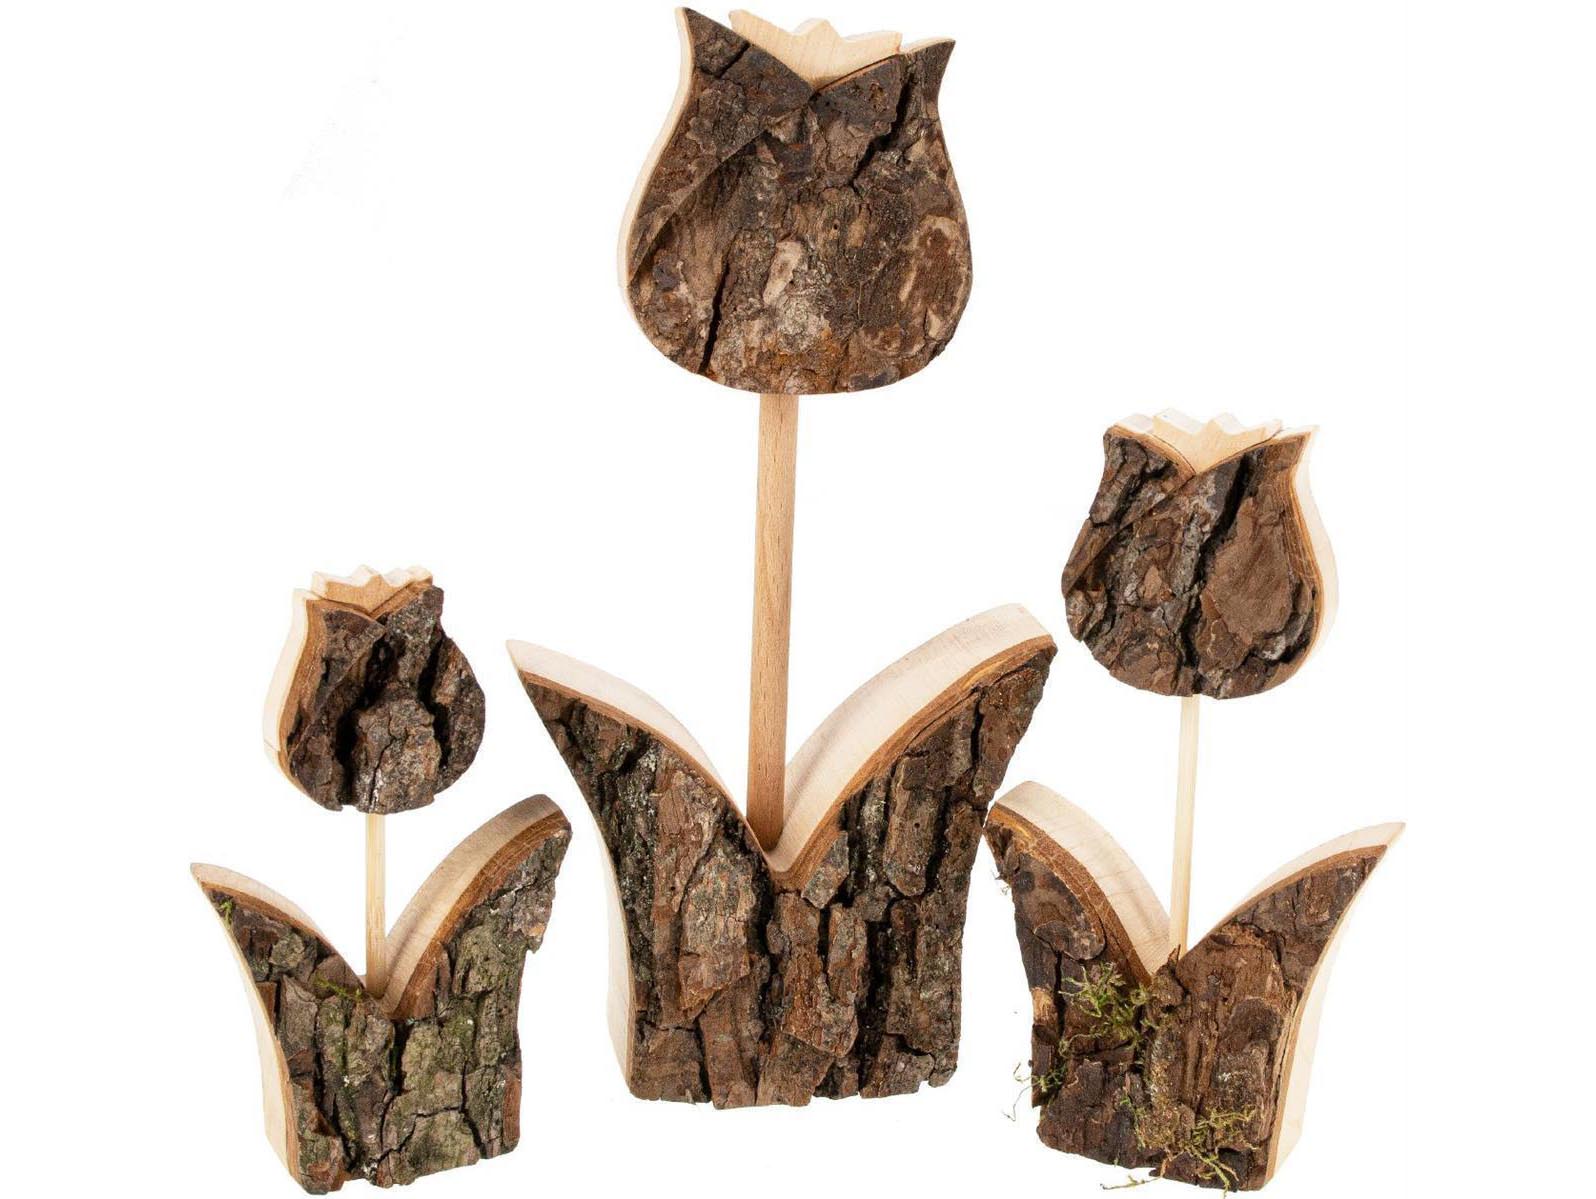 Handgefertigte Holz Tulpen aus Erle | Mit Rinde - Natürliche Holzdekoration - 15 x 3,5 cm